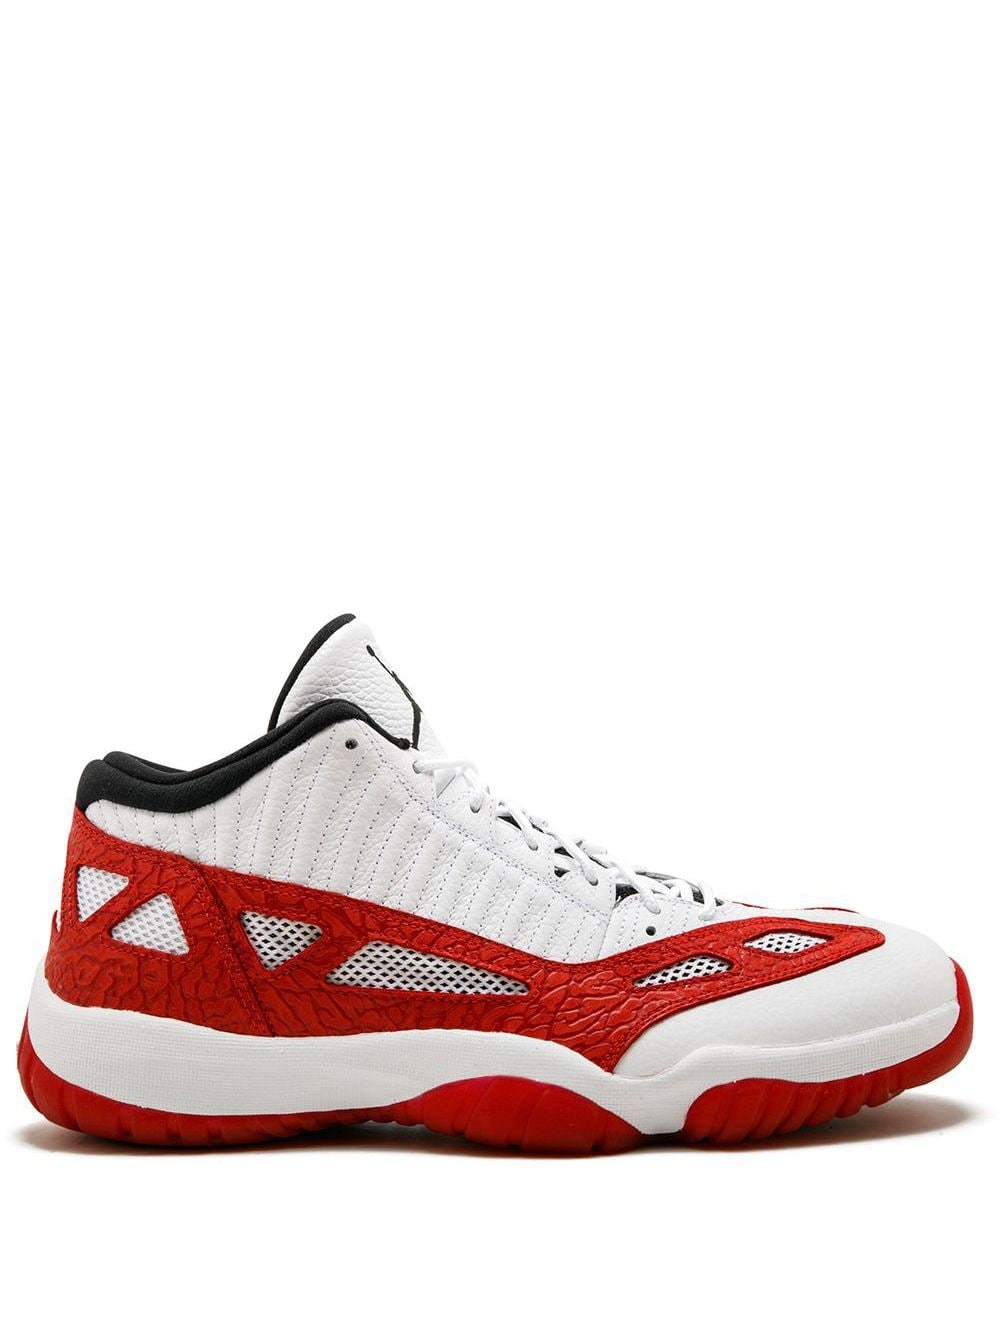 Image 1 of Jordan Air Jordan 11 Retro sneakers